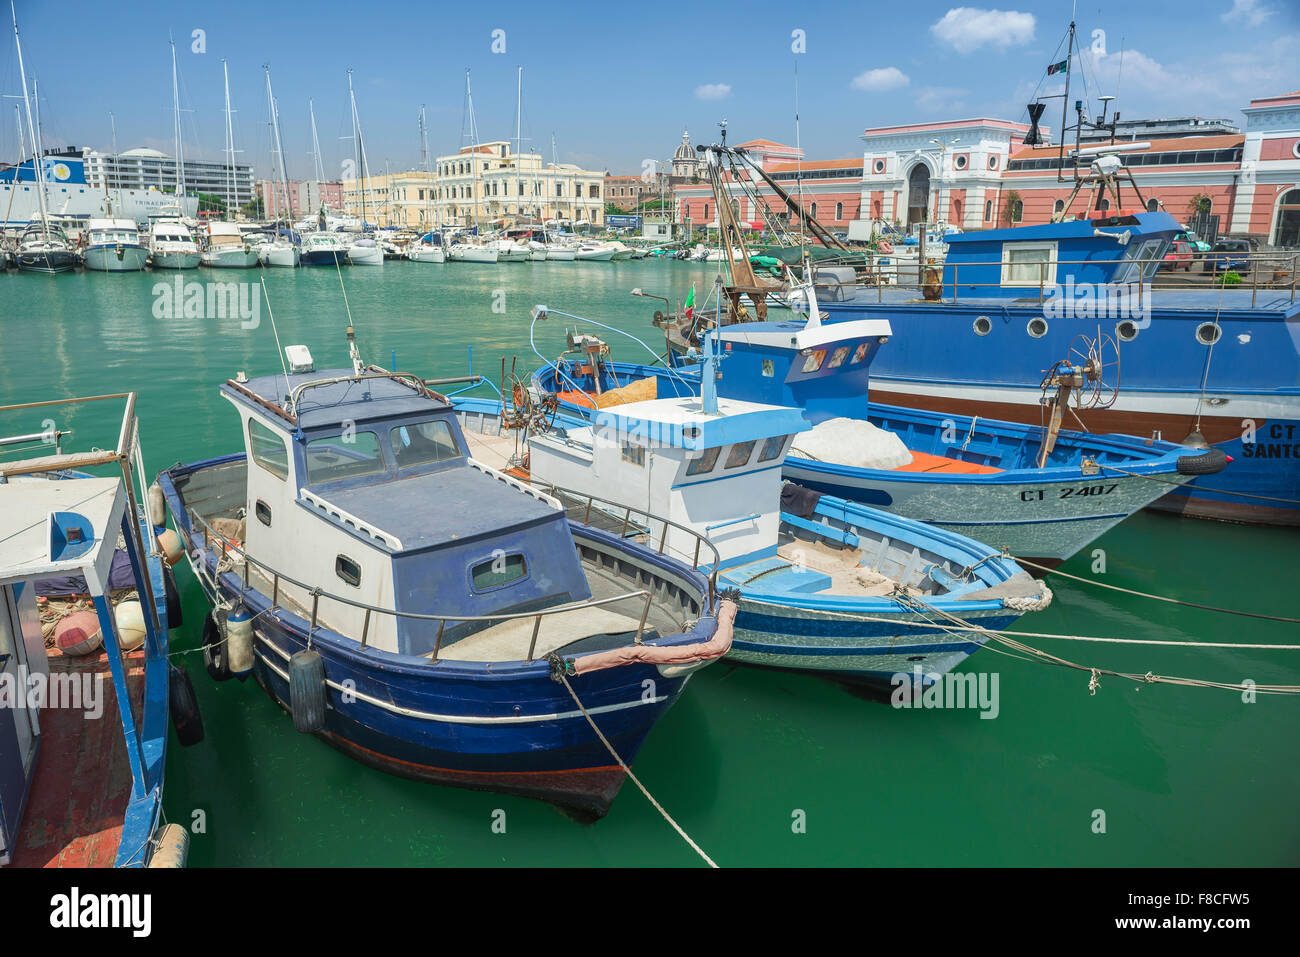 Port de Catane, vue sur une rangée de bateaux de pêche amarrés dans le port de Catane, Sicile. Banque D'Images